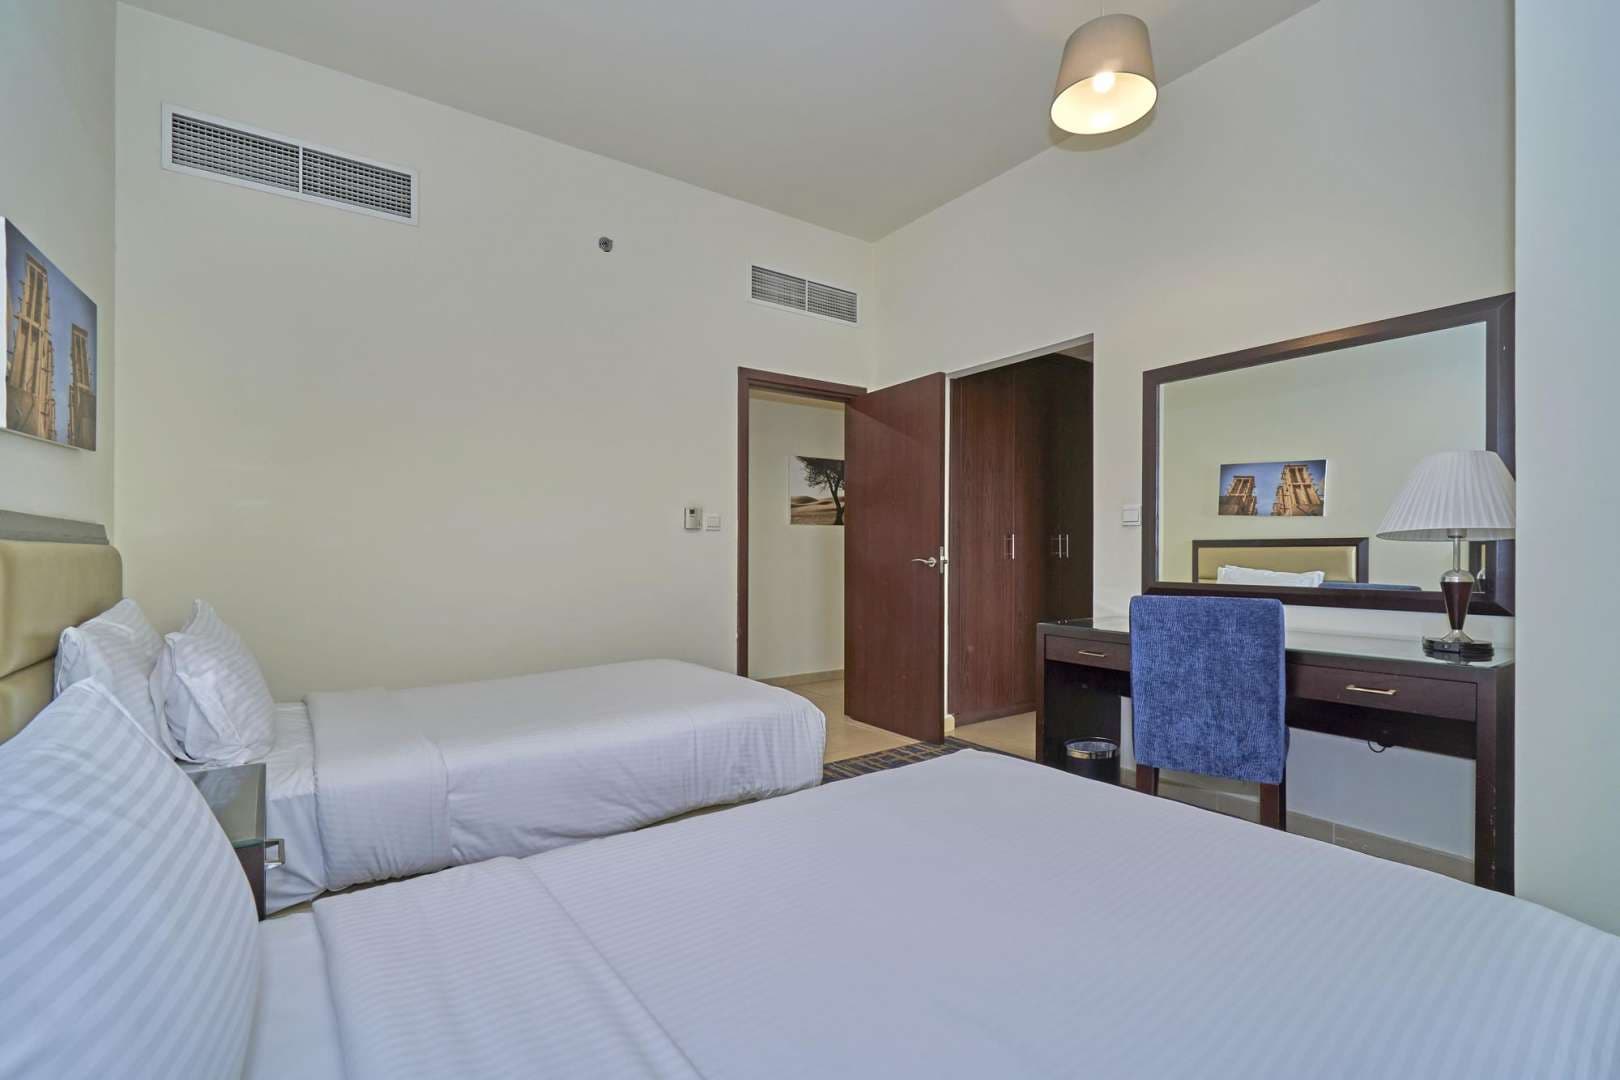 3 Bedroom Apartment For Rent Amwaj Lp05804 1919c70853521700.jpg